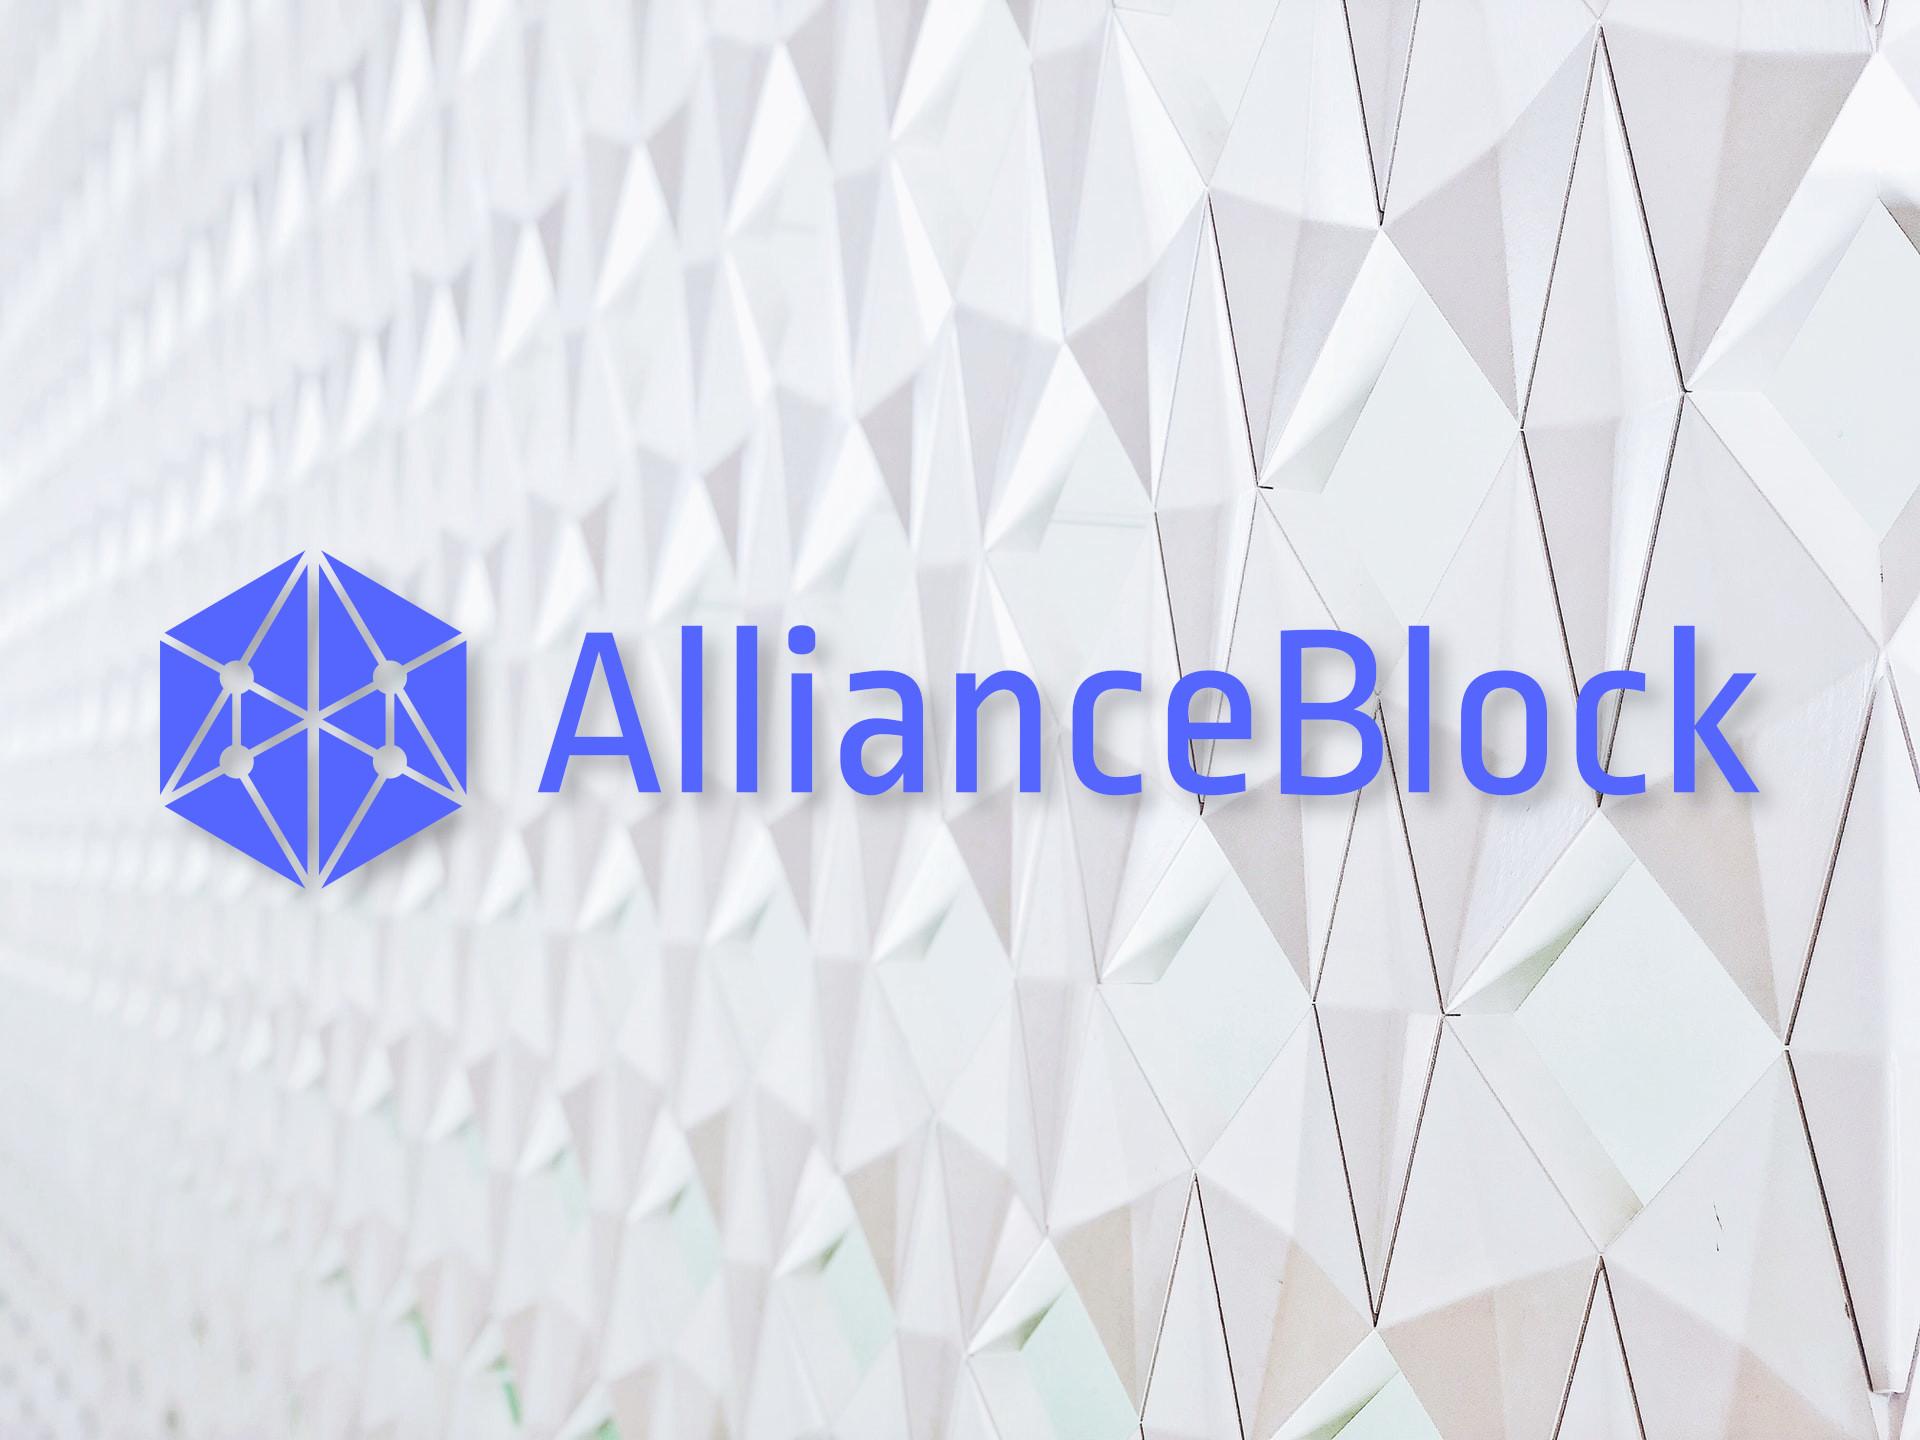 AllianceBlock logo cover image